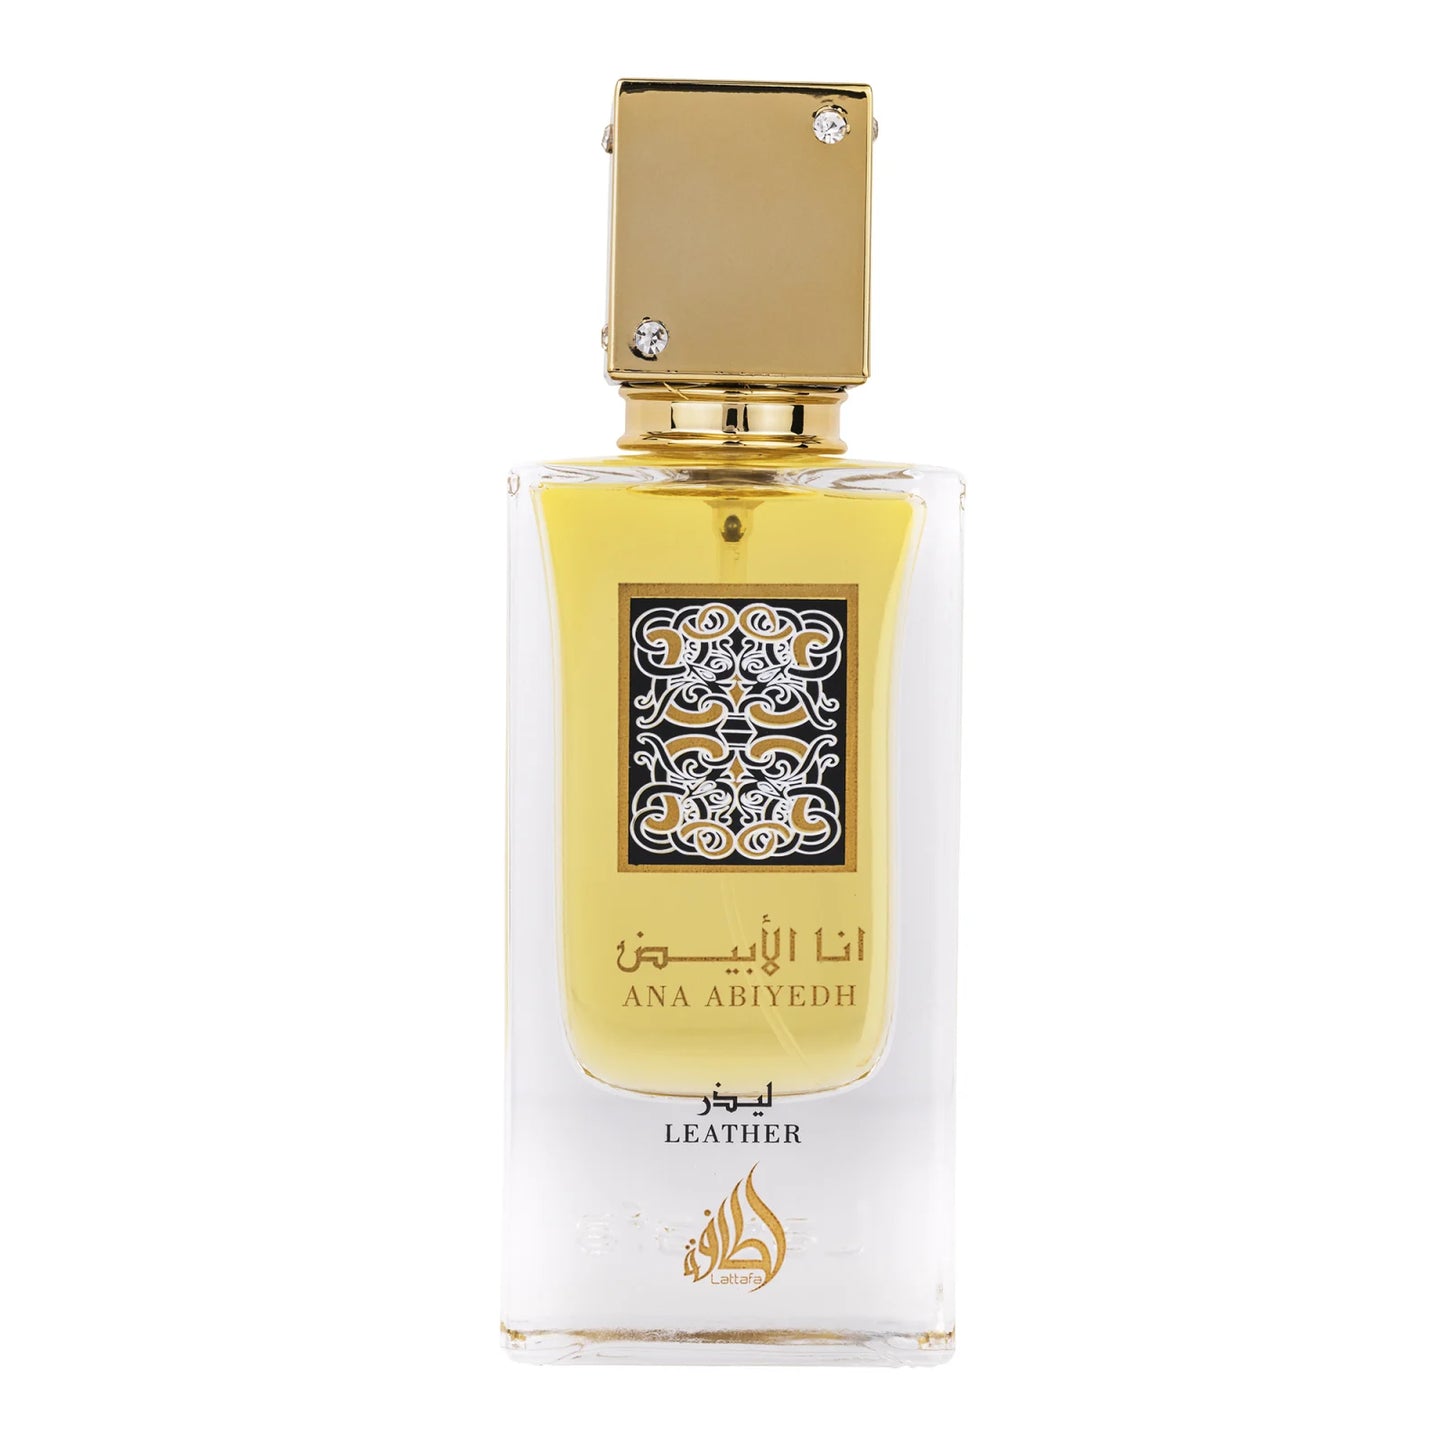 Parfum Ana Abiyedh Leather, Lattafa, apa de parfum 60 ml, femei